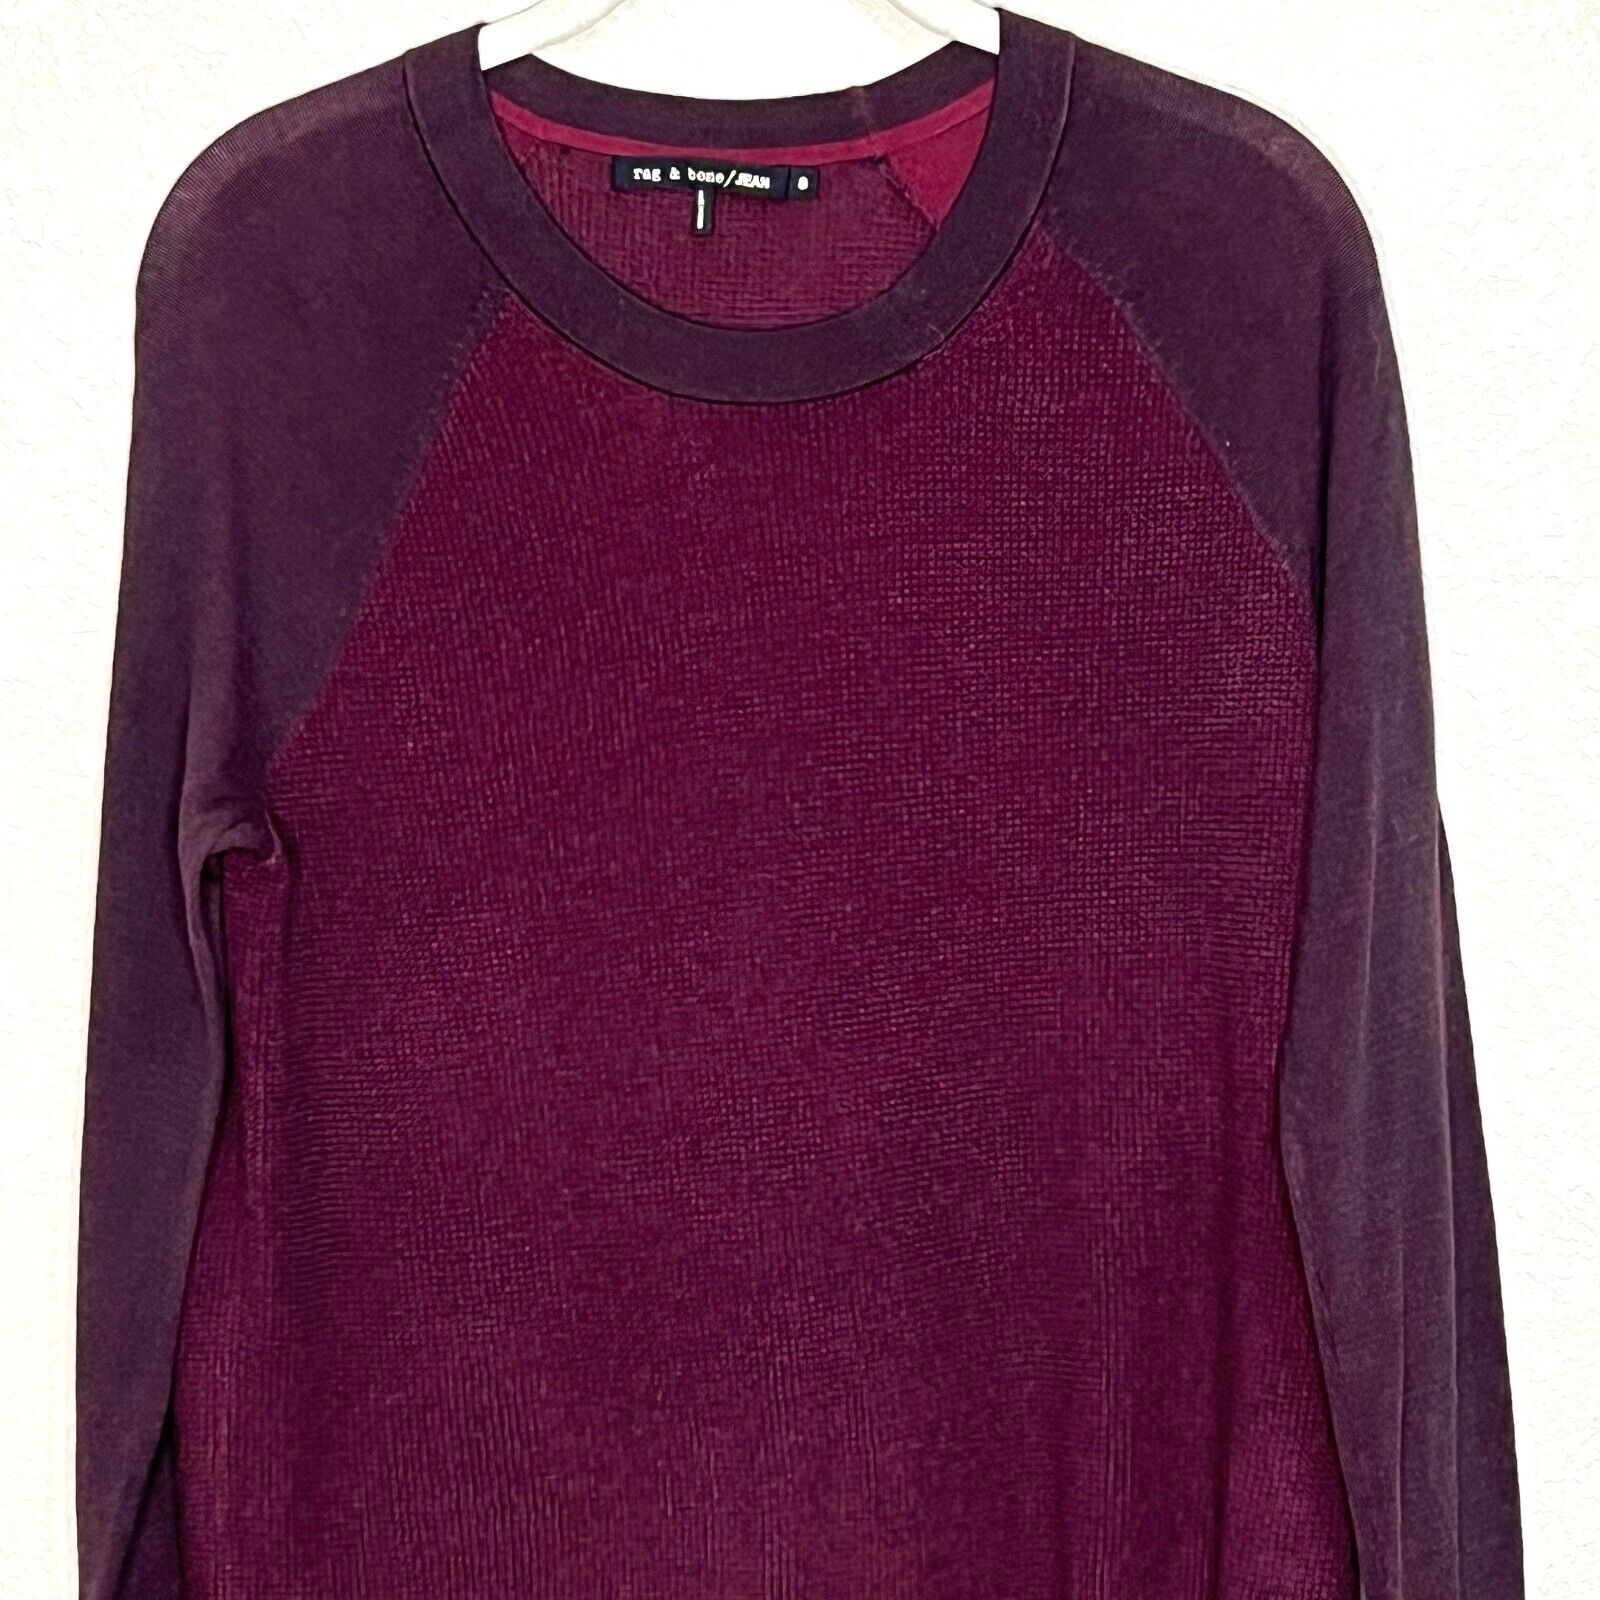 rag & bone Jean Burgundy Knit Long Sleeve Sweater Women's Size Small